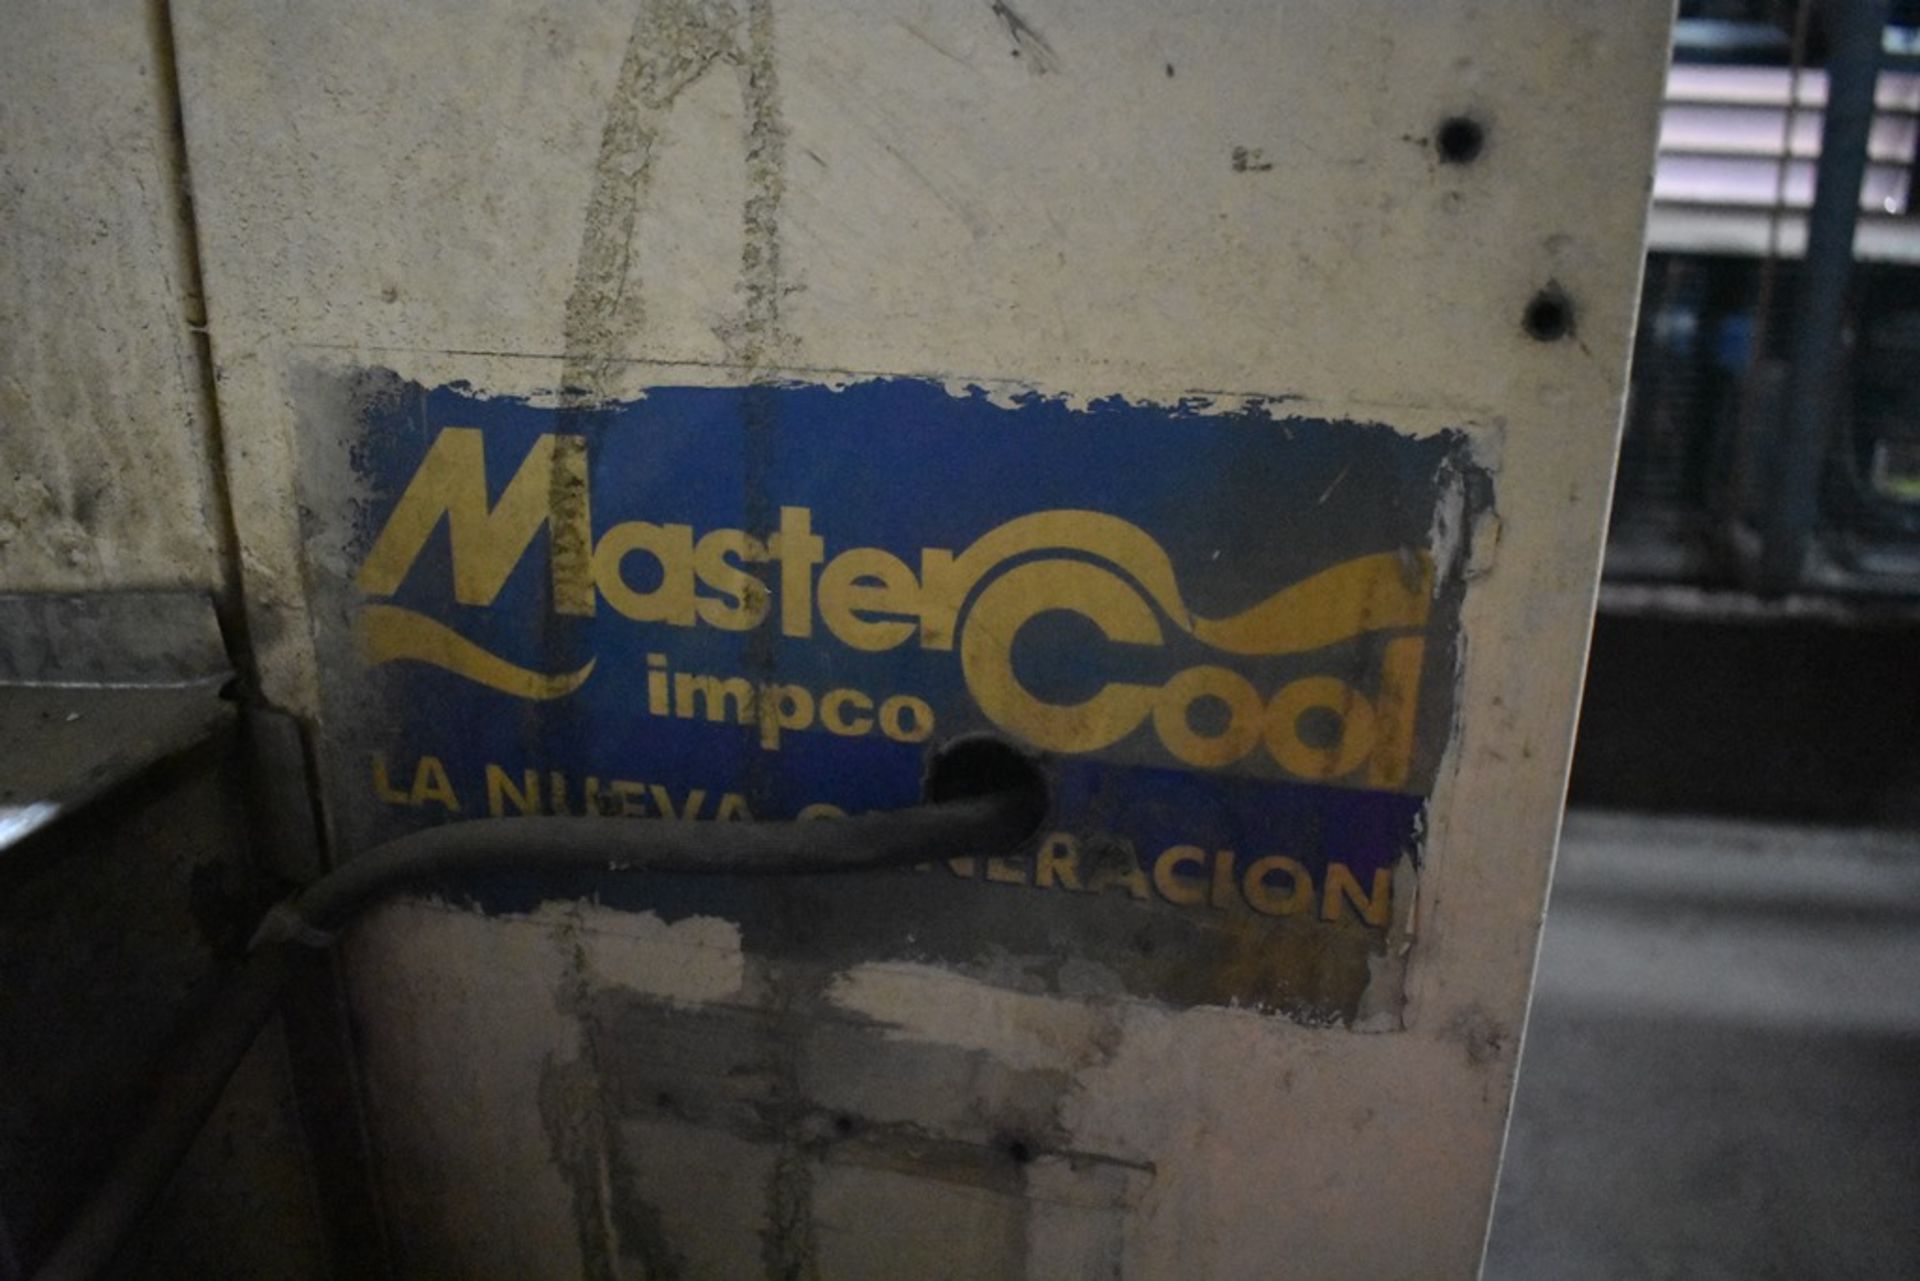 Equipo de extracción marca Master Cool, modelo ND, número de serie ND; incluye ducteria de 51 x 71 - Bild 8 aus 28